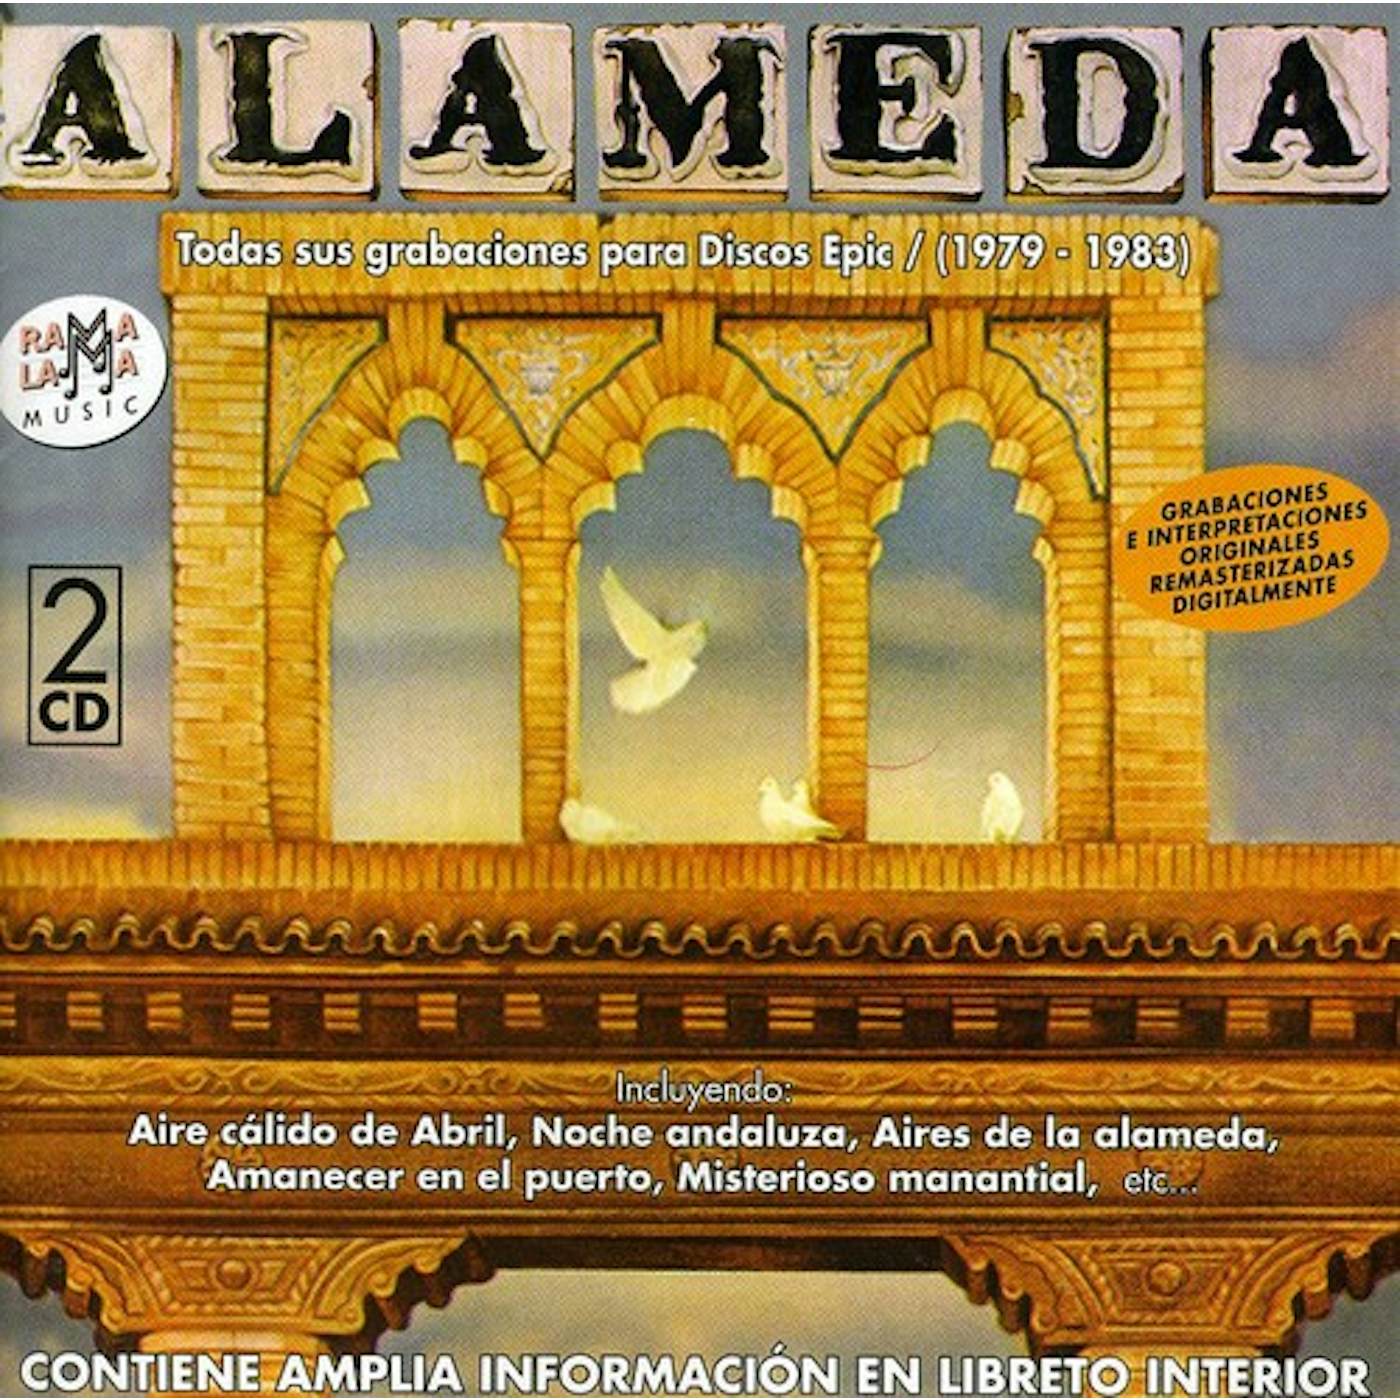 Alameda SUS GRABACIONES PARA EPIC CD